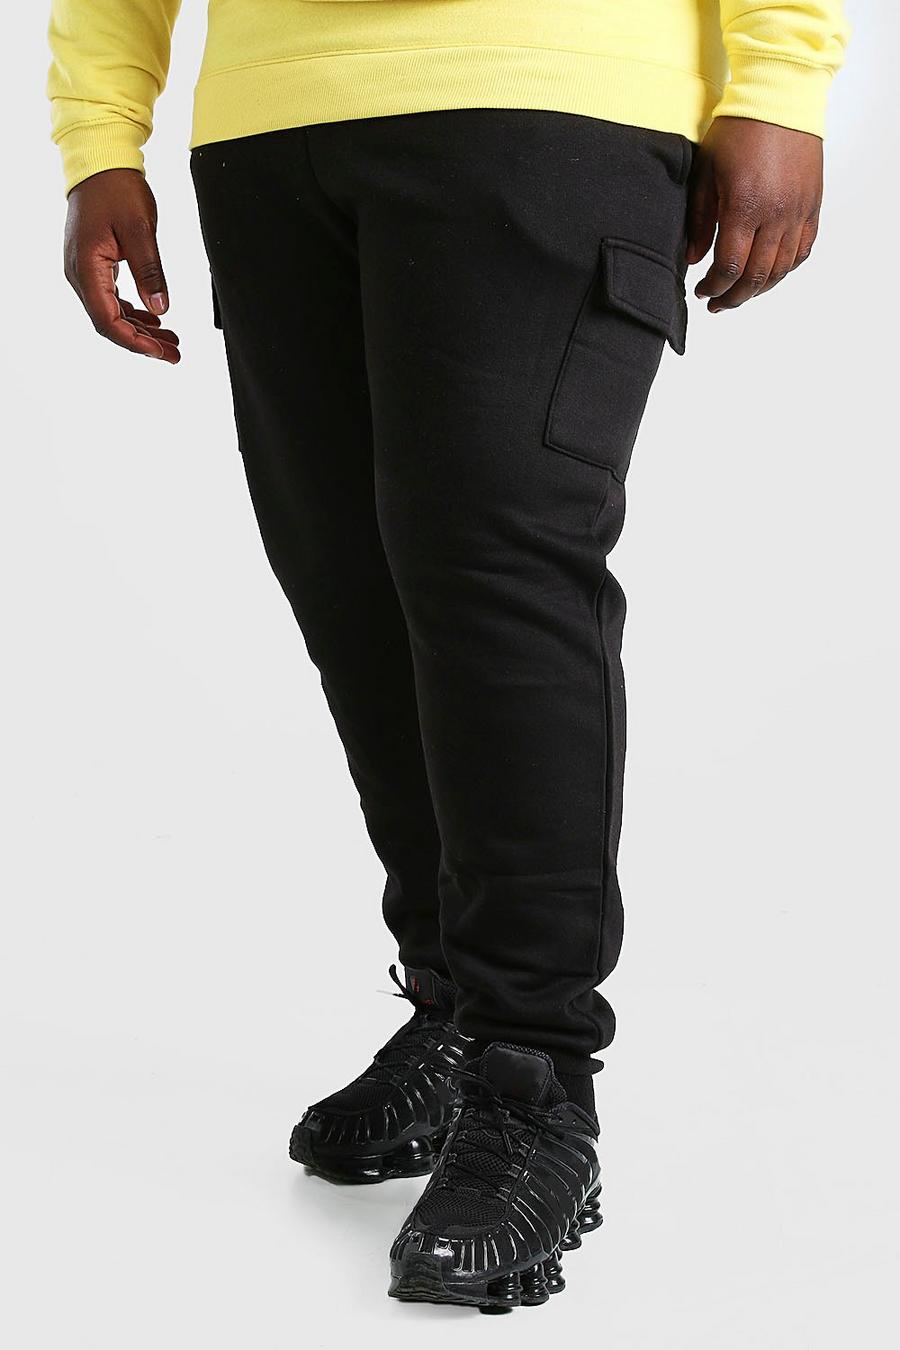 שחור מכנסי ריצה בסגנון דגמ"ח בייסיק בגזרת סקיני לגברים גדולים וגבוהים image number 1